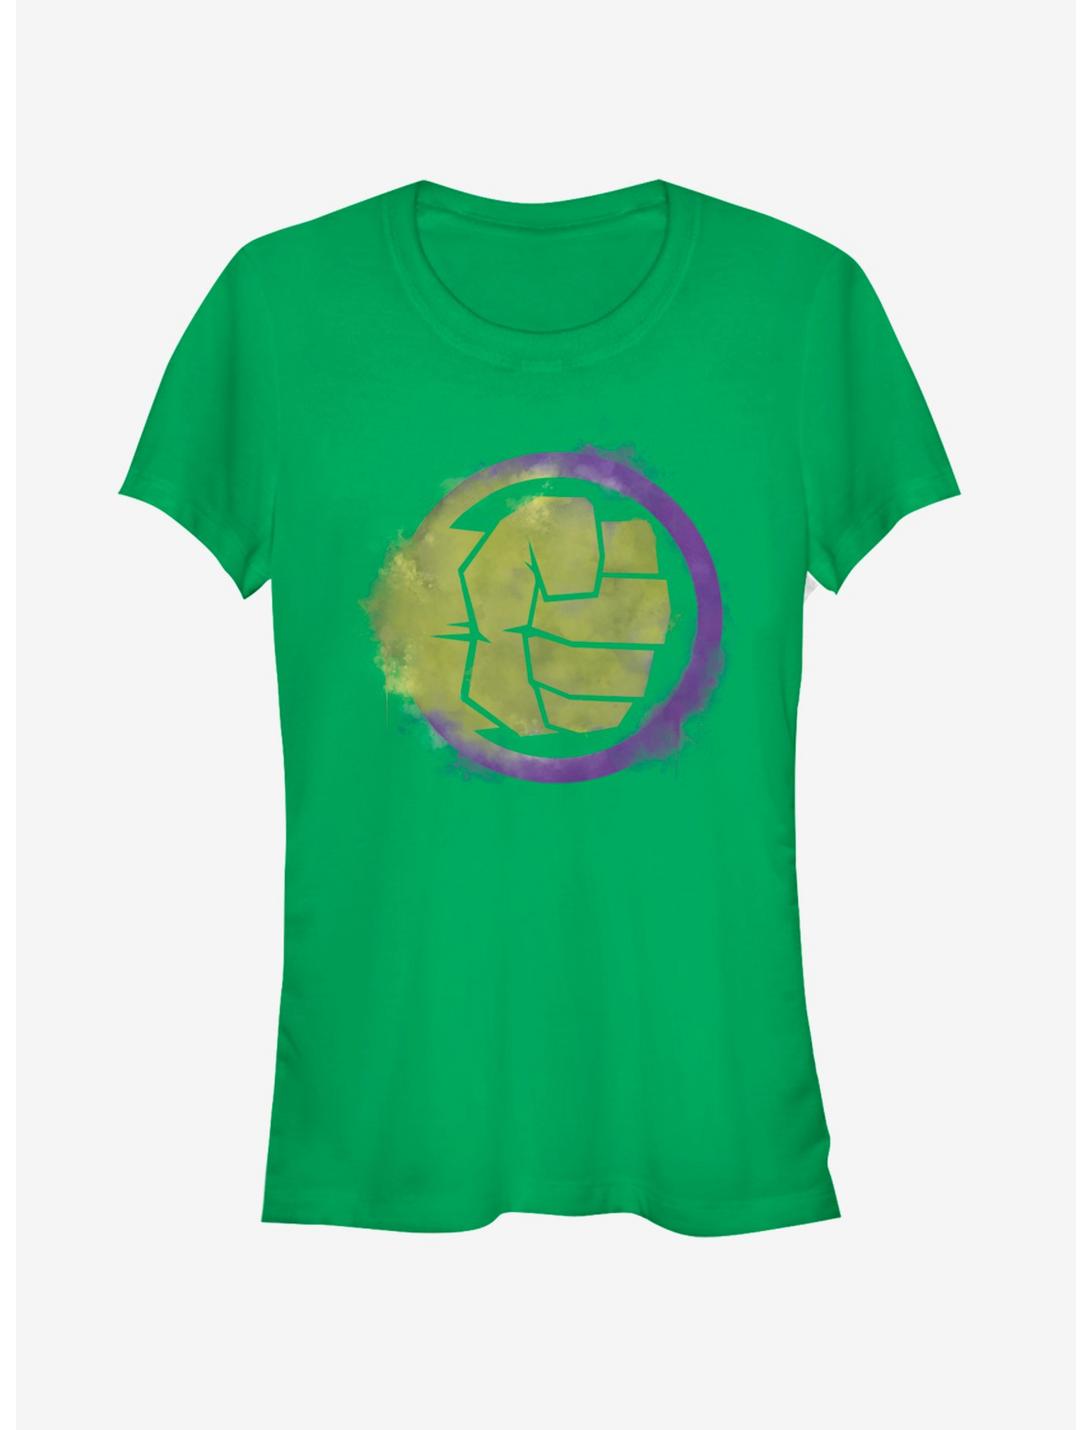 Marvel Avengers: Endgame Hulk Spray Logo Girls Kelly Green T-Shirt, KELLY, hi-res